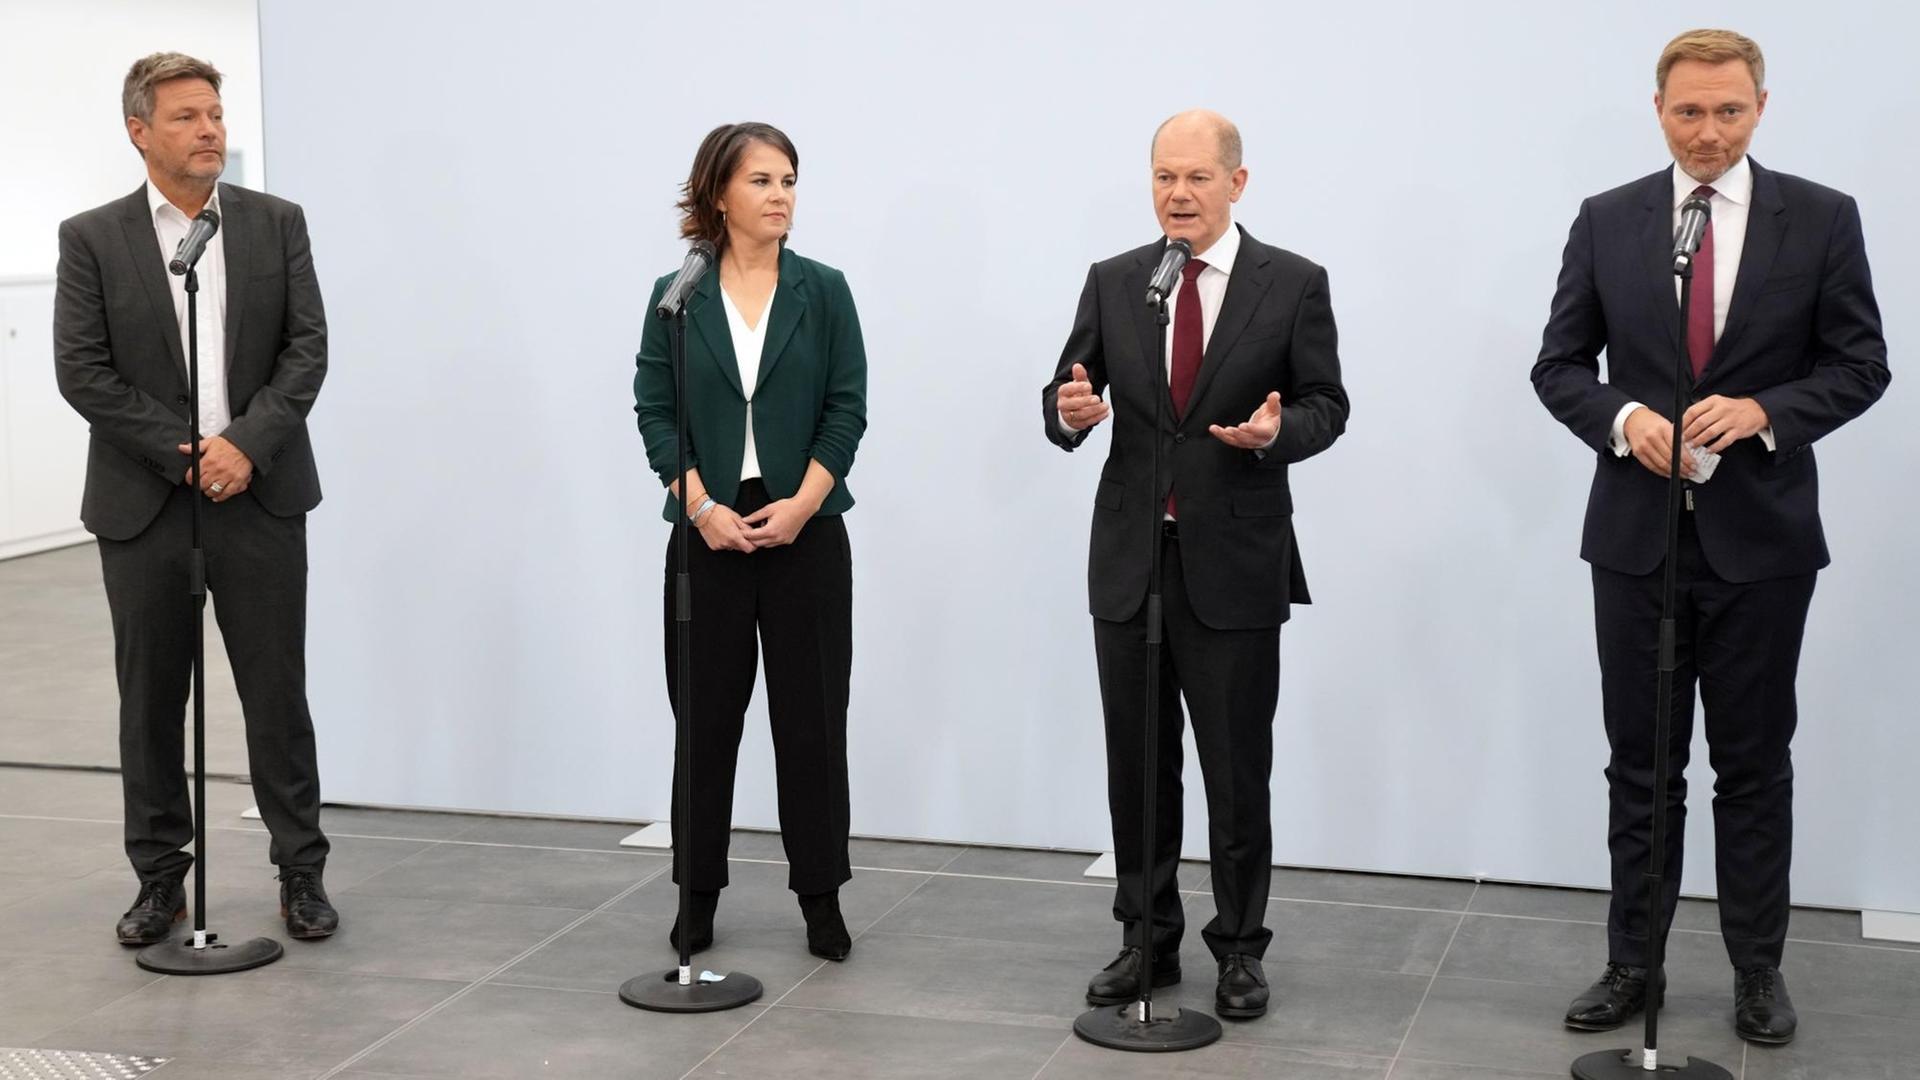 Robert Habeck und Annalena Baerbock von den Grünen, Olaf Scholz von der SPD und Christian Lindner von der FDP stehen vor Mikrofonen.